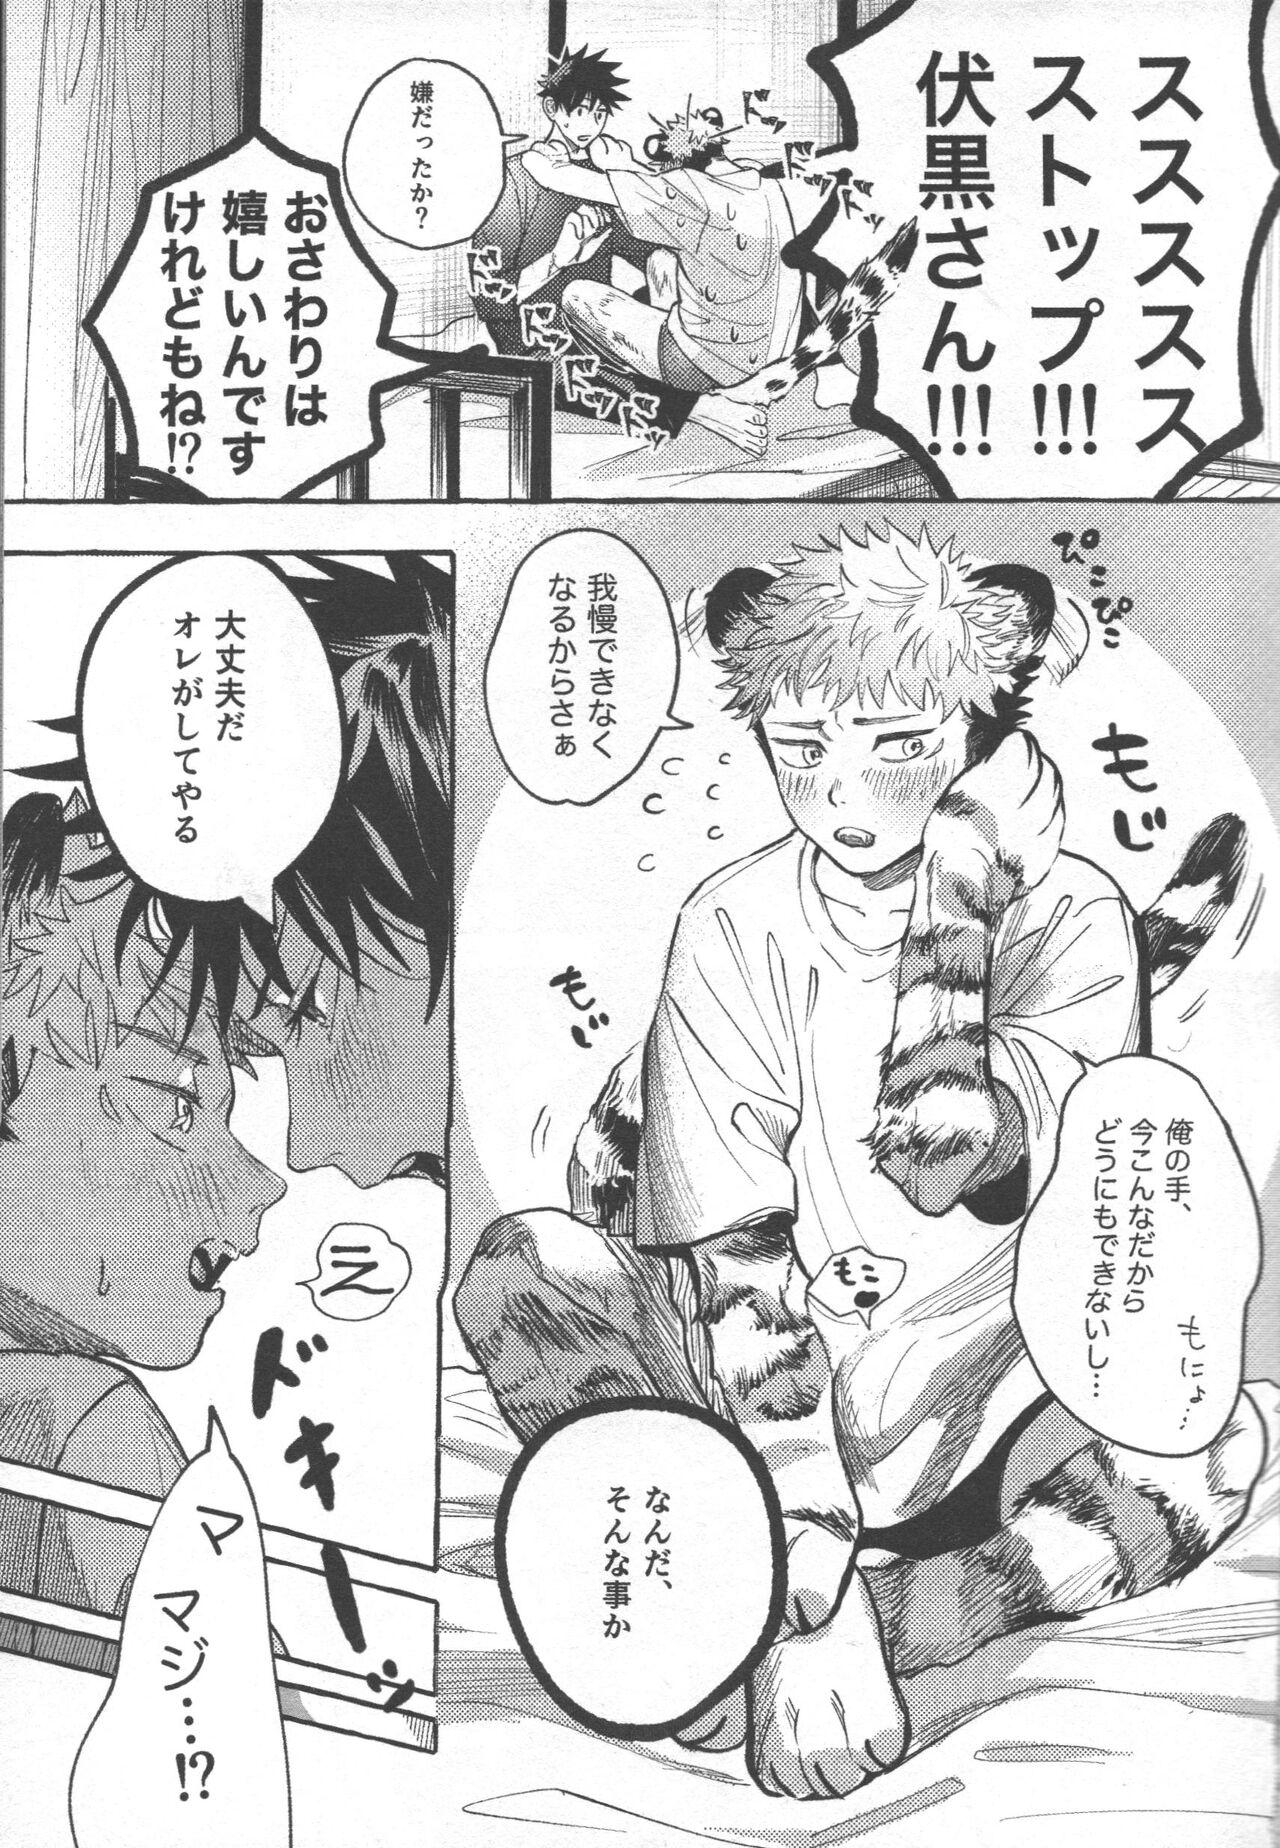 Riding Cock Tora no koubi wa 2 nichi de 100 kai - Jujutsu kaisen Tanga - Page 7